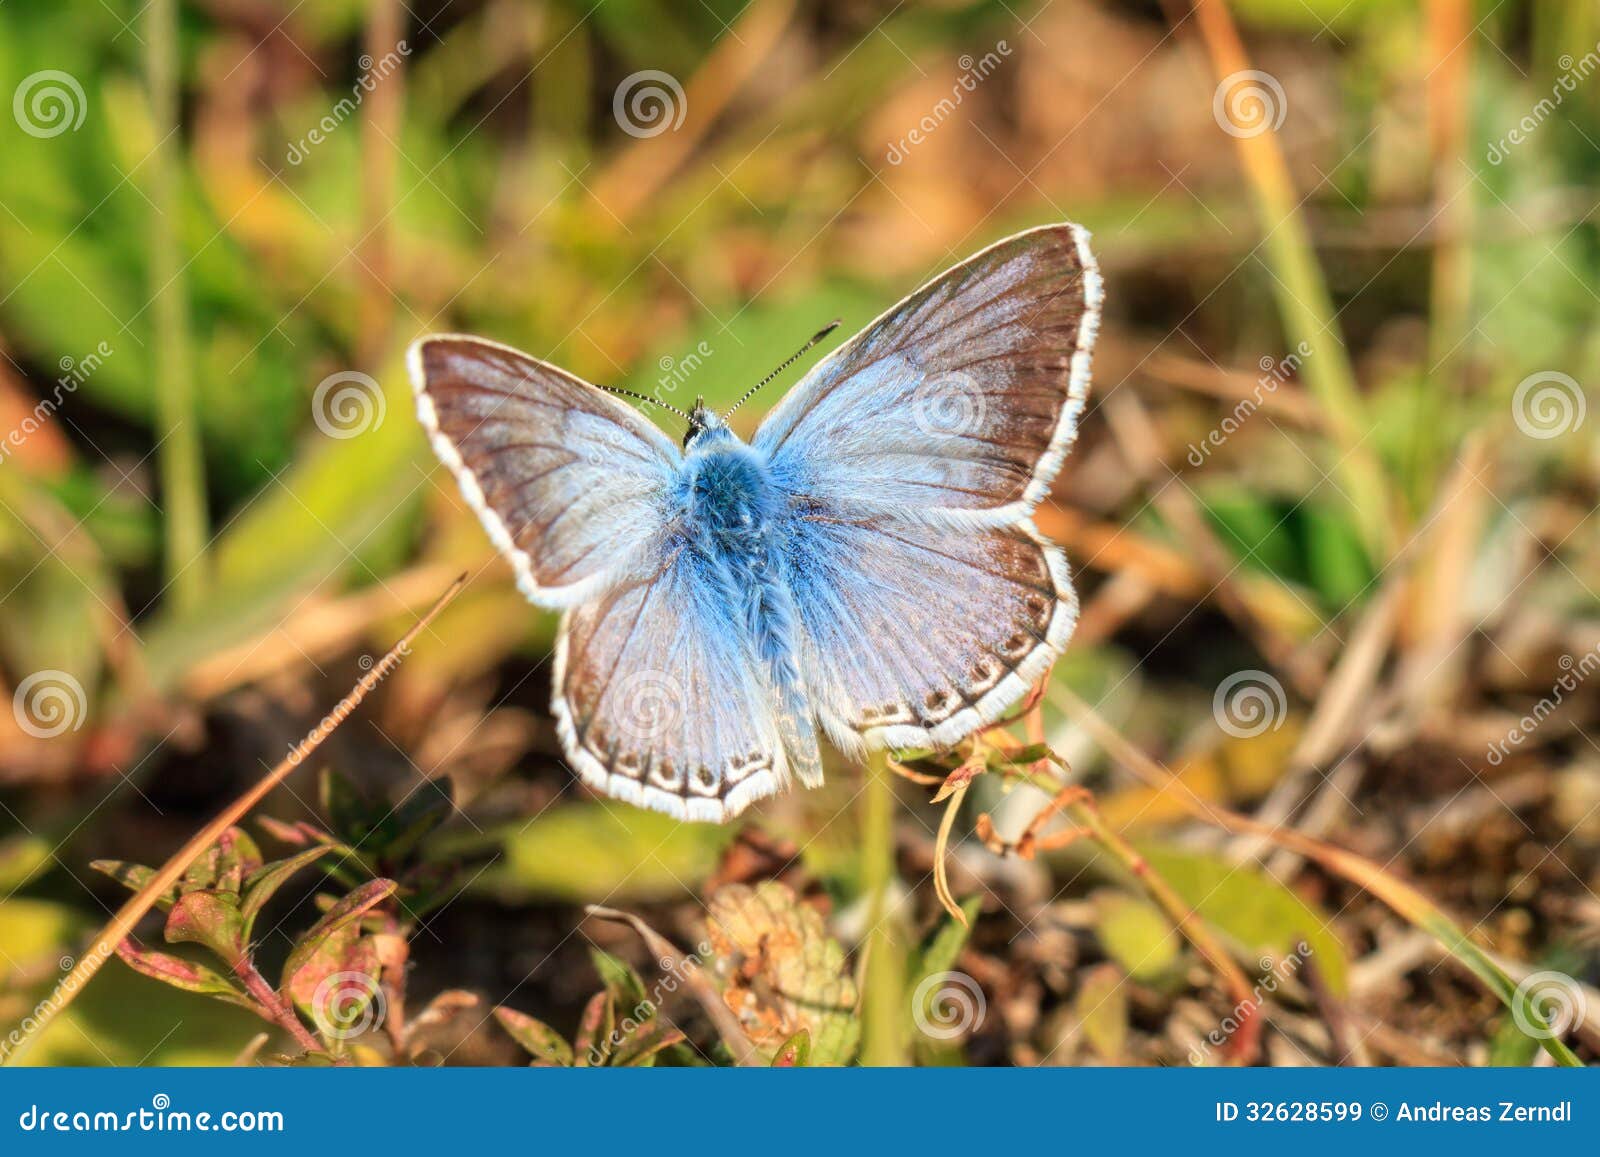 blue gossamer winged butterfly